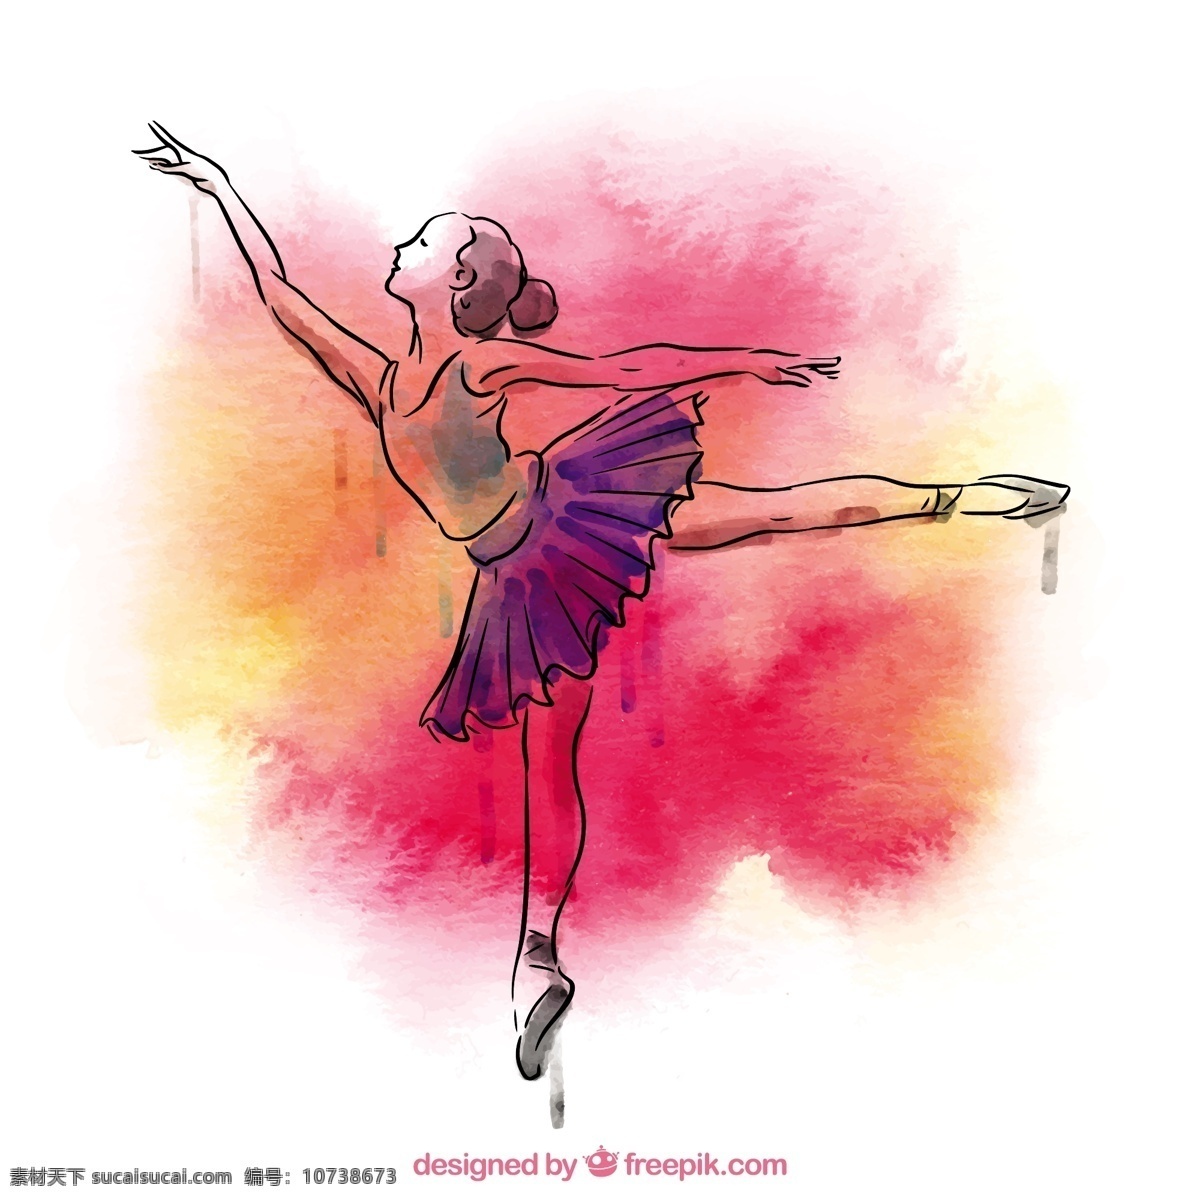 手绘 芭蕾舞 女演员 水彩 手 飞溅 舞蹈 手工绘制 艺术 绘画 芭蕾 舞蹈家 艺术家 拉 移动 运动 素描 跳舞 女孩